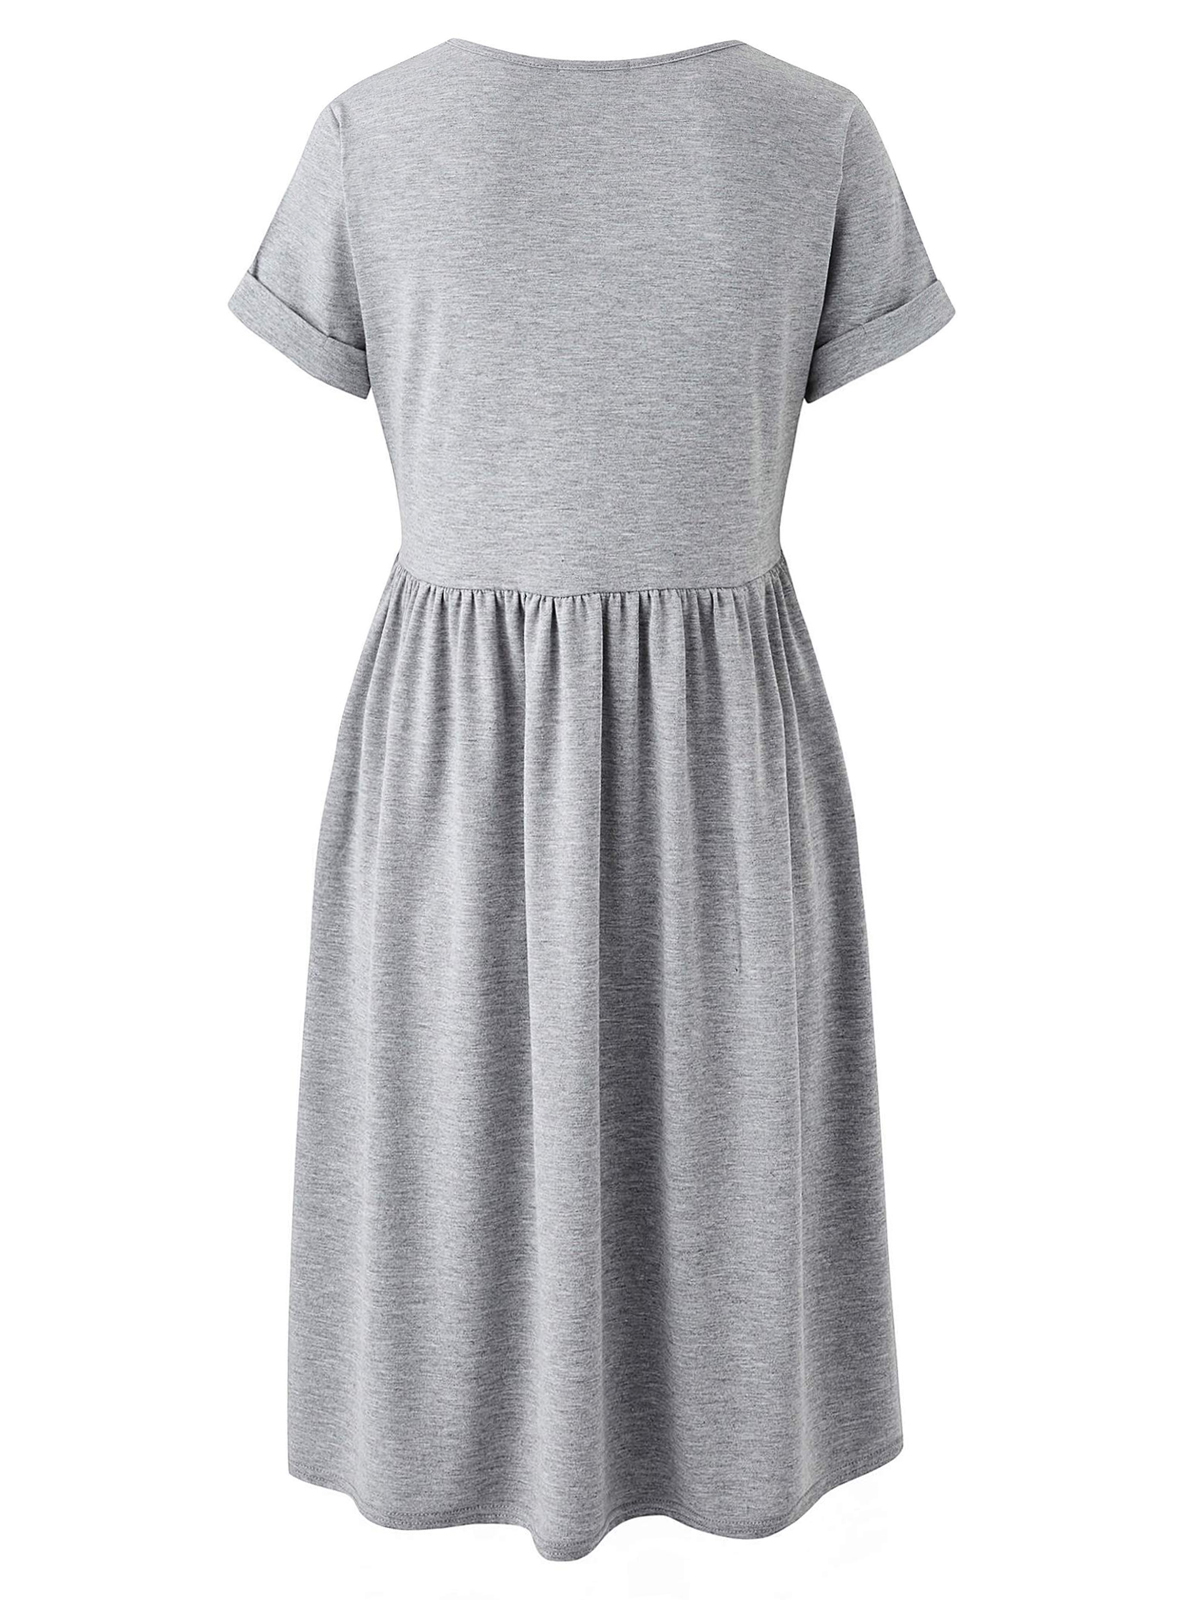 grey babydoll dress